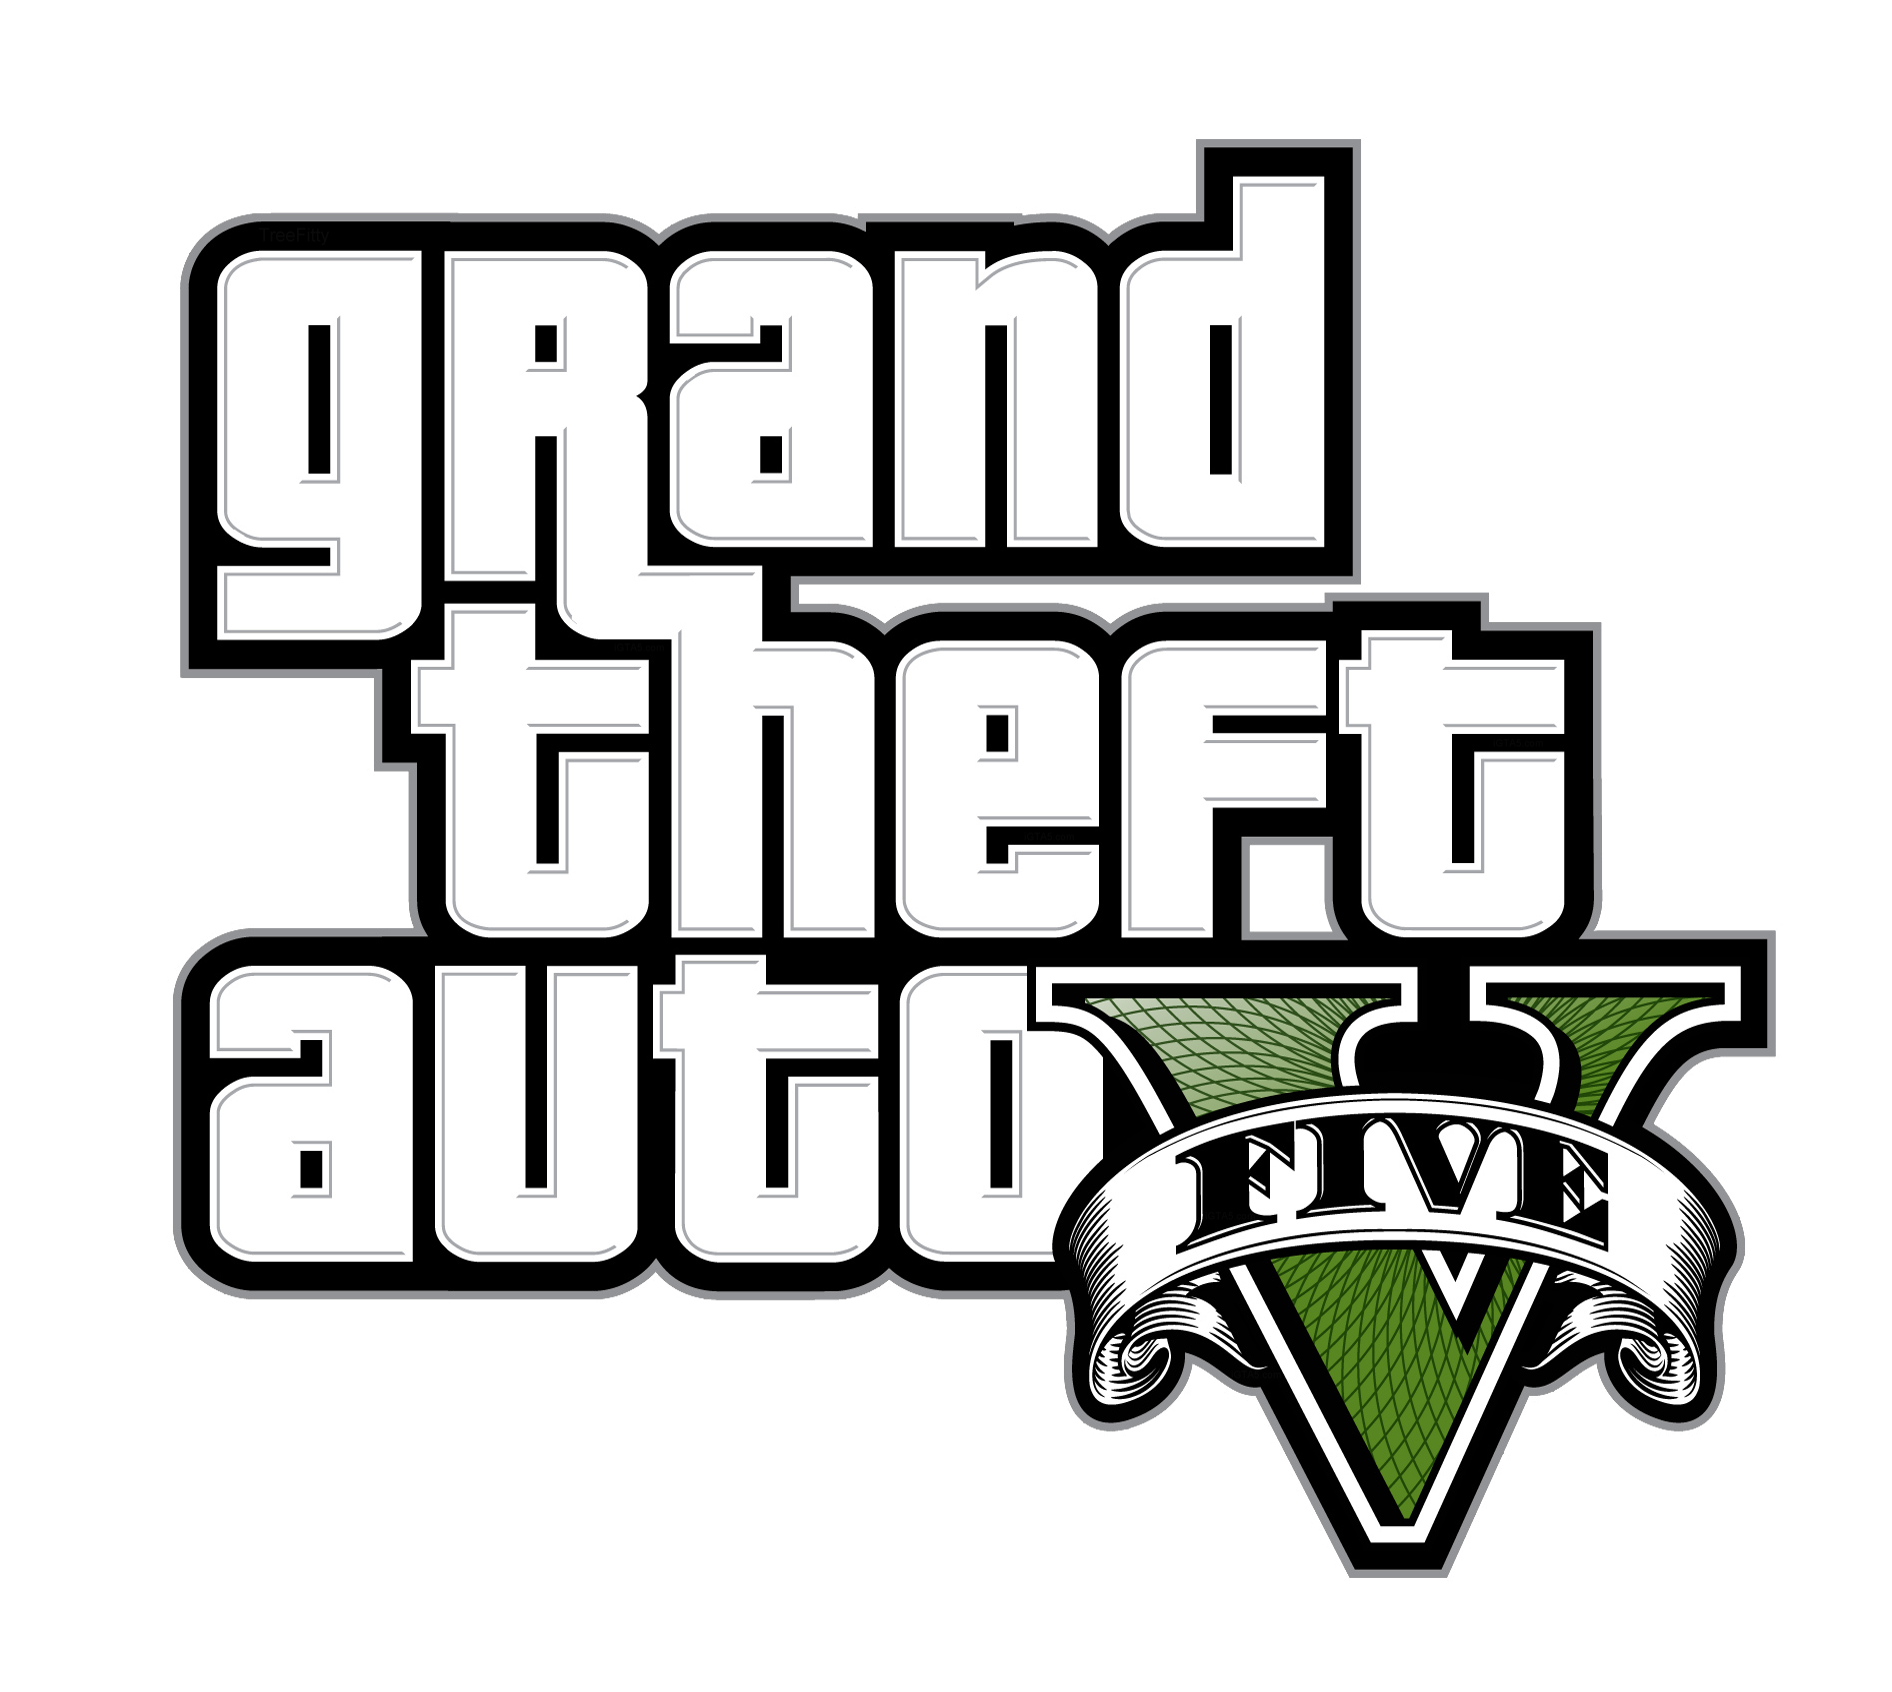 Hãy xem những hình ảnh đẹp mắt về Logo Grand Theft Auto V trong đoạn clip art này. Sự thật là đây là một trong những trò chơi được yêu thích nhất mọi thời đại, vì vậy hãy cùng trải nghiệm và khám phá thế giới của GTA V.